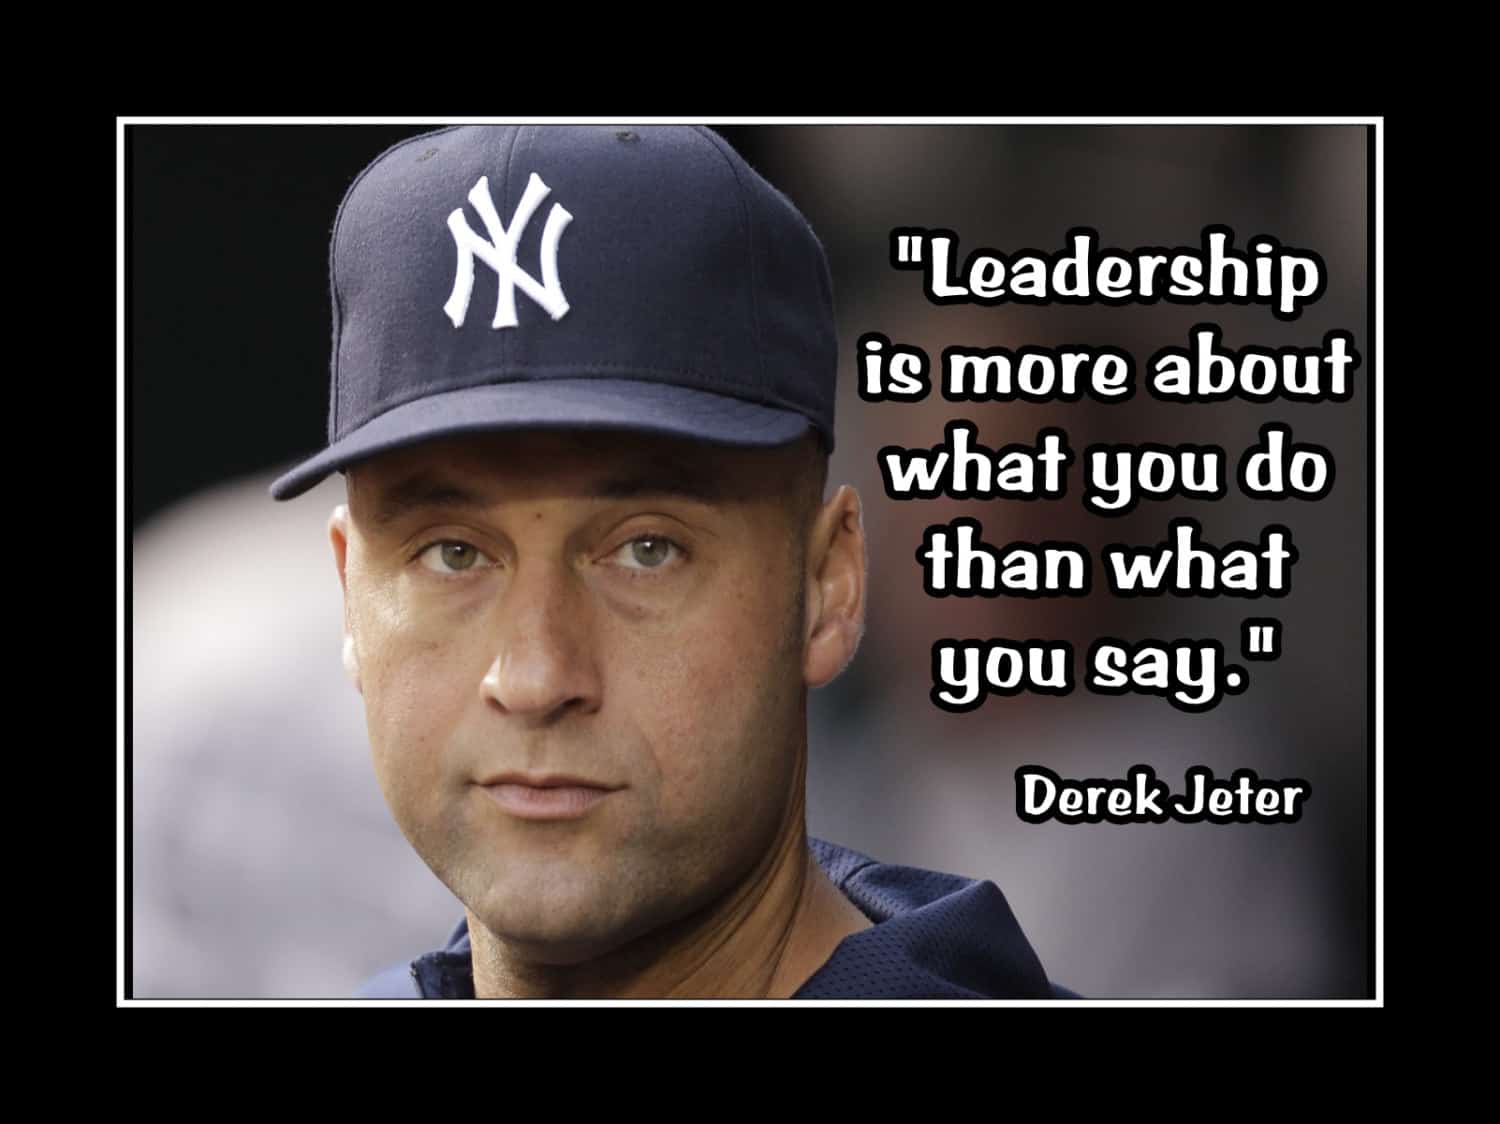 Derek jeter quote on leadership